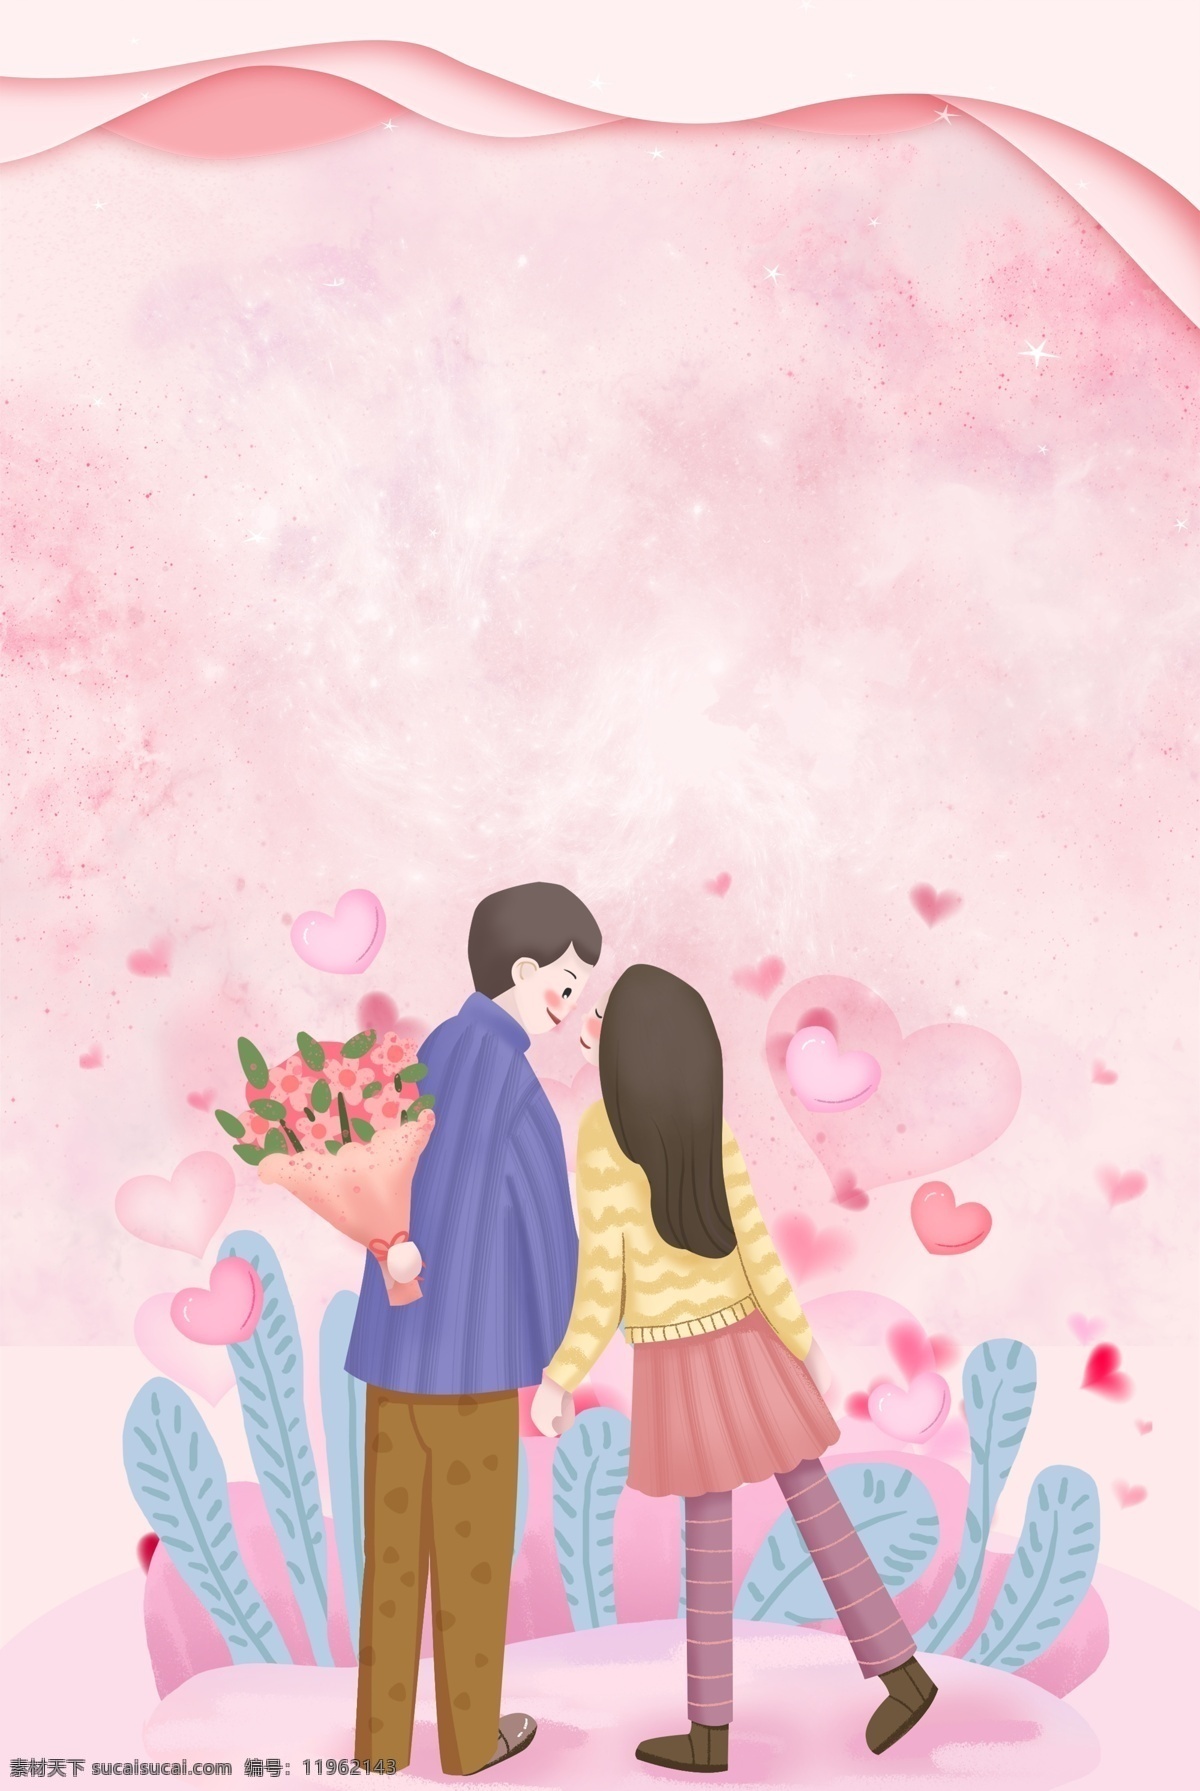 情人节 粉色 手绘 背景 卡通 云朵 框架 叶子 花朵